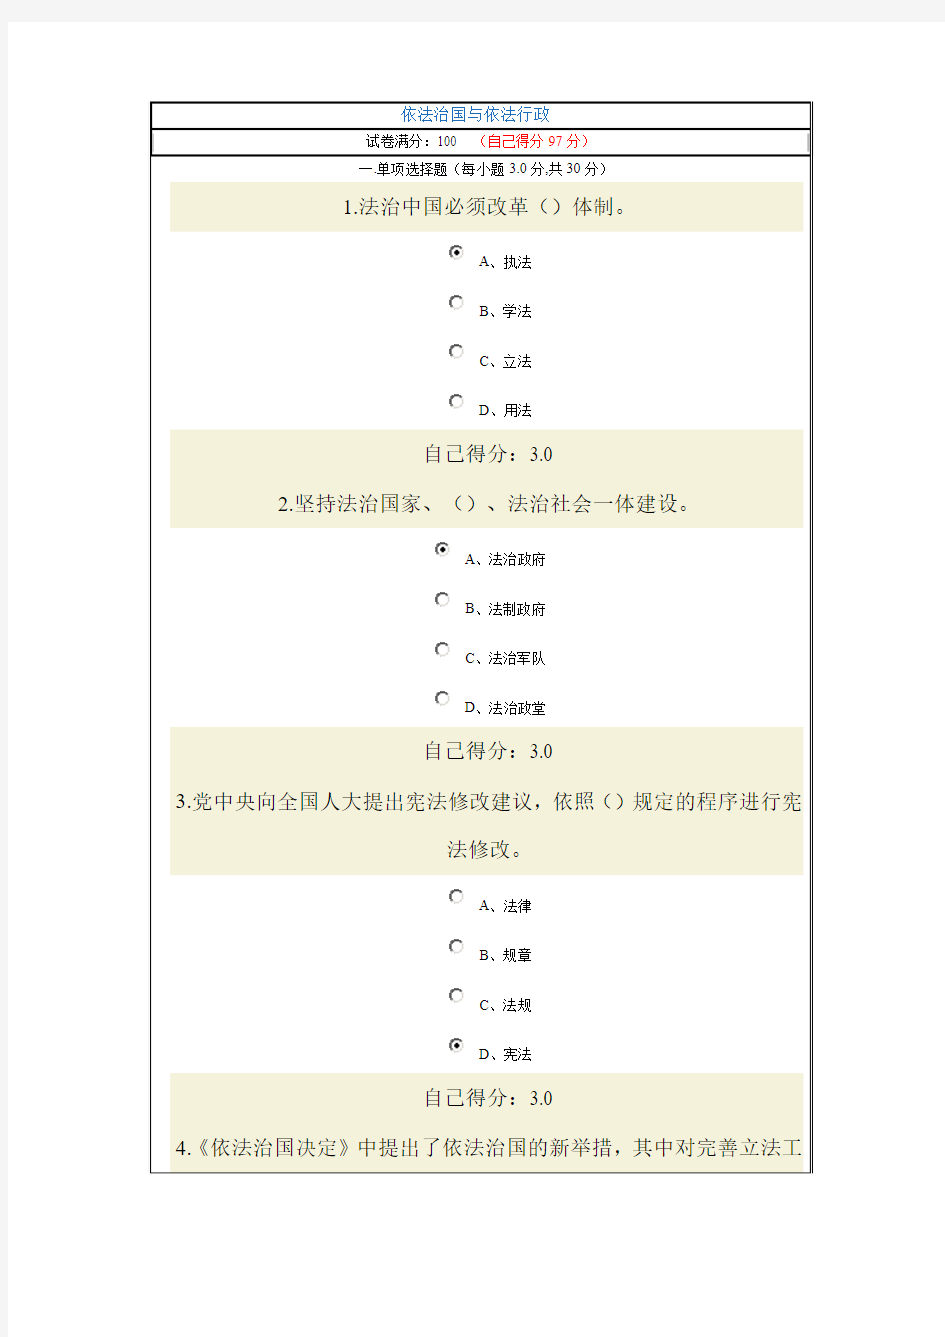 2015年广西教育培训网络考试《依法治国与依法行政》试题与答案(97分)